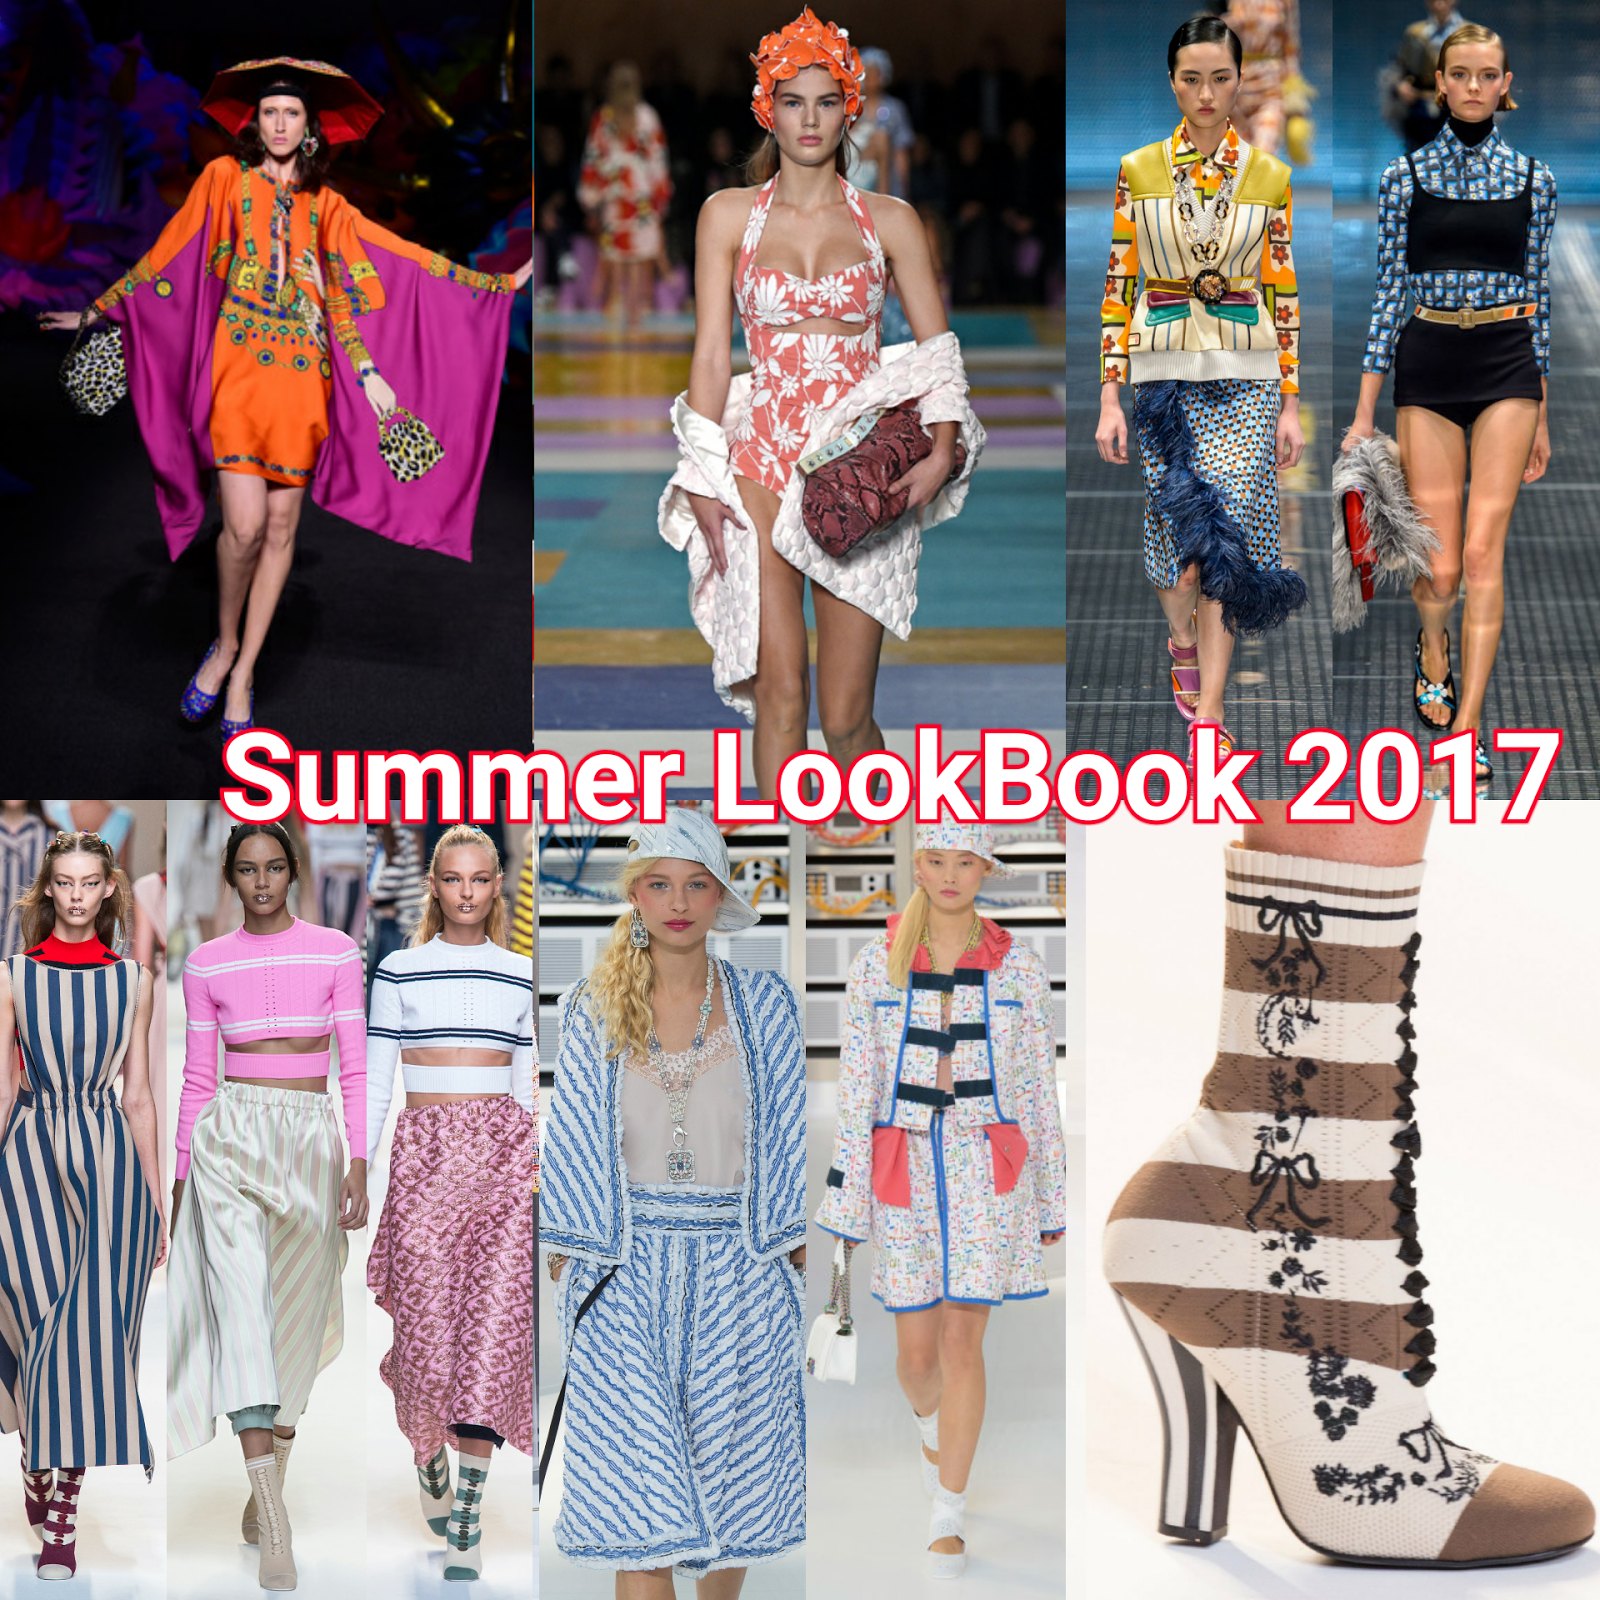 Summer Look 2017: l'imperativo è Osare! Per un'estate al massimo con stile